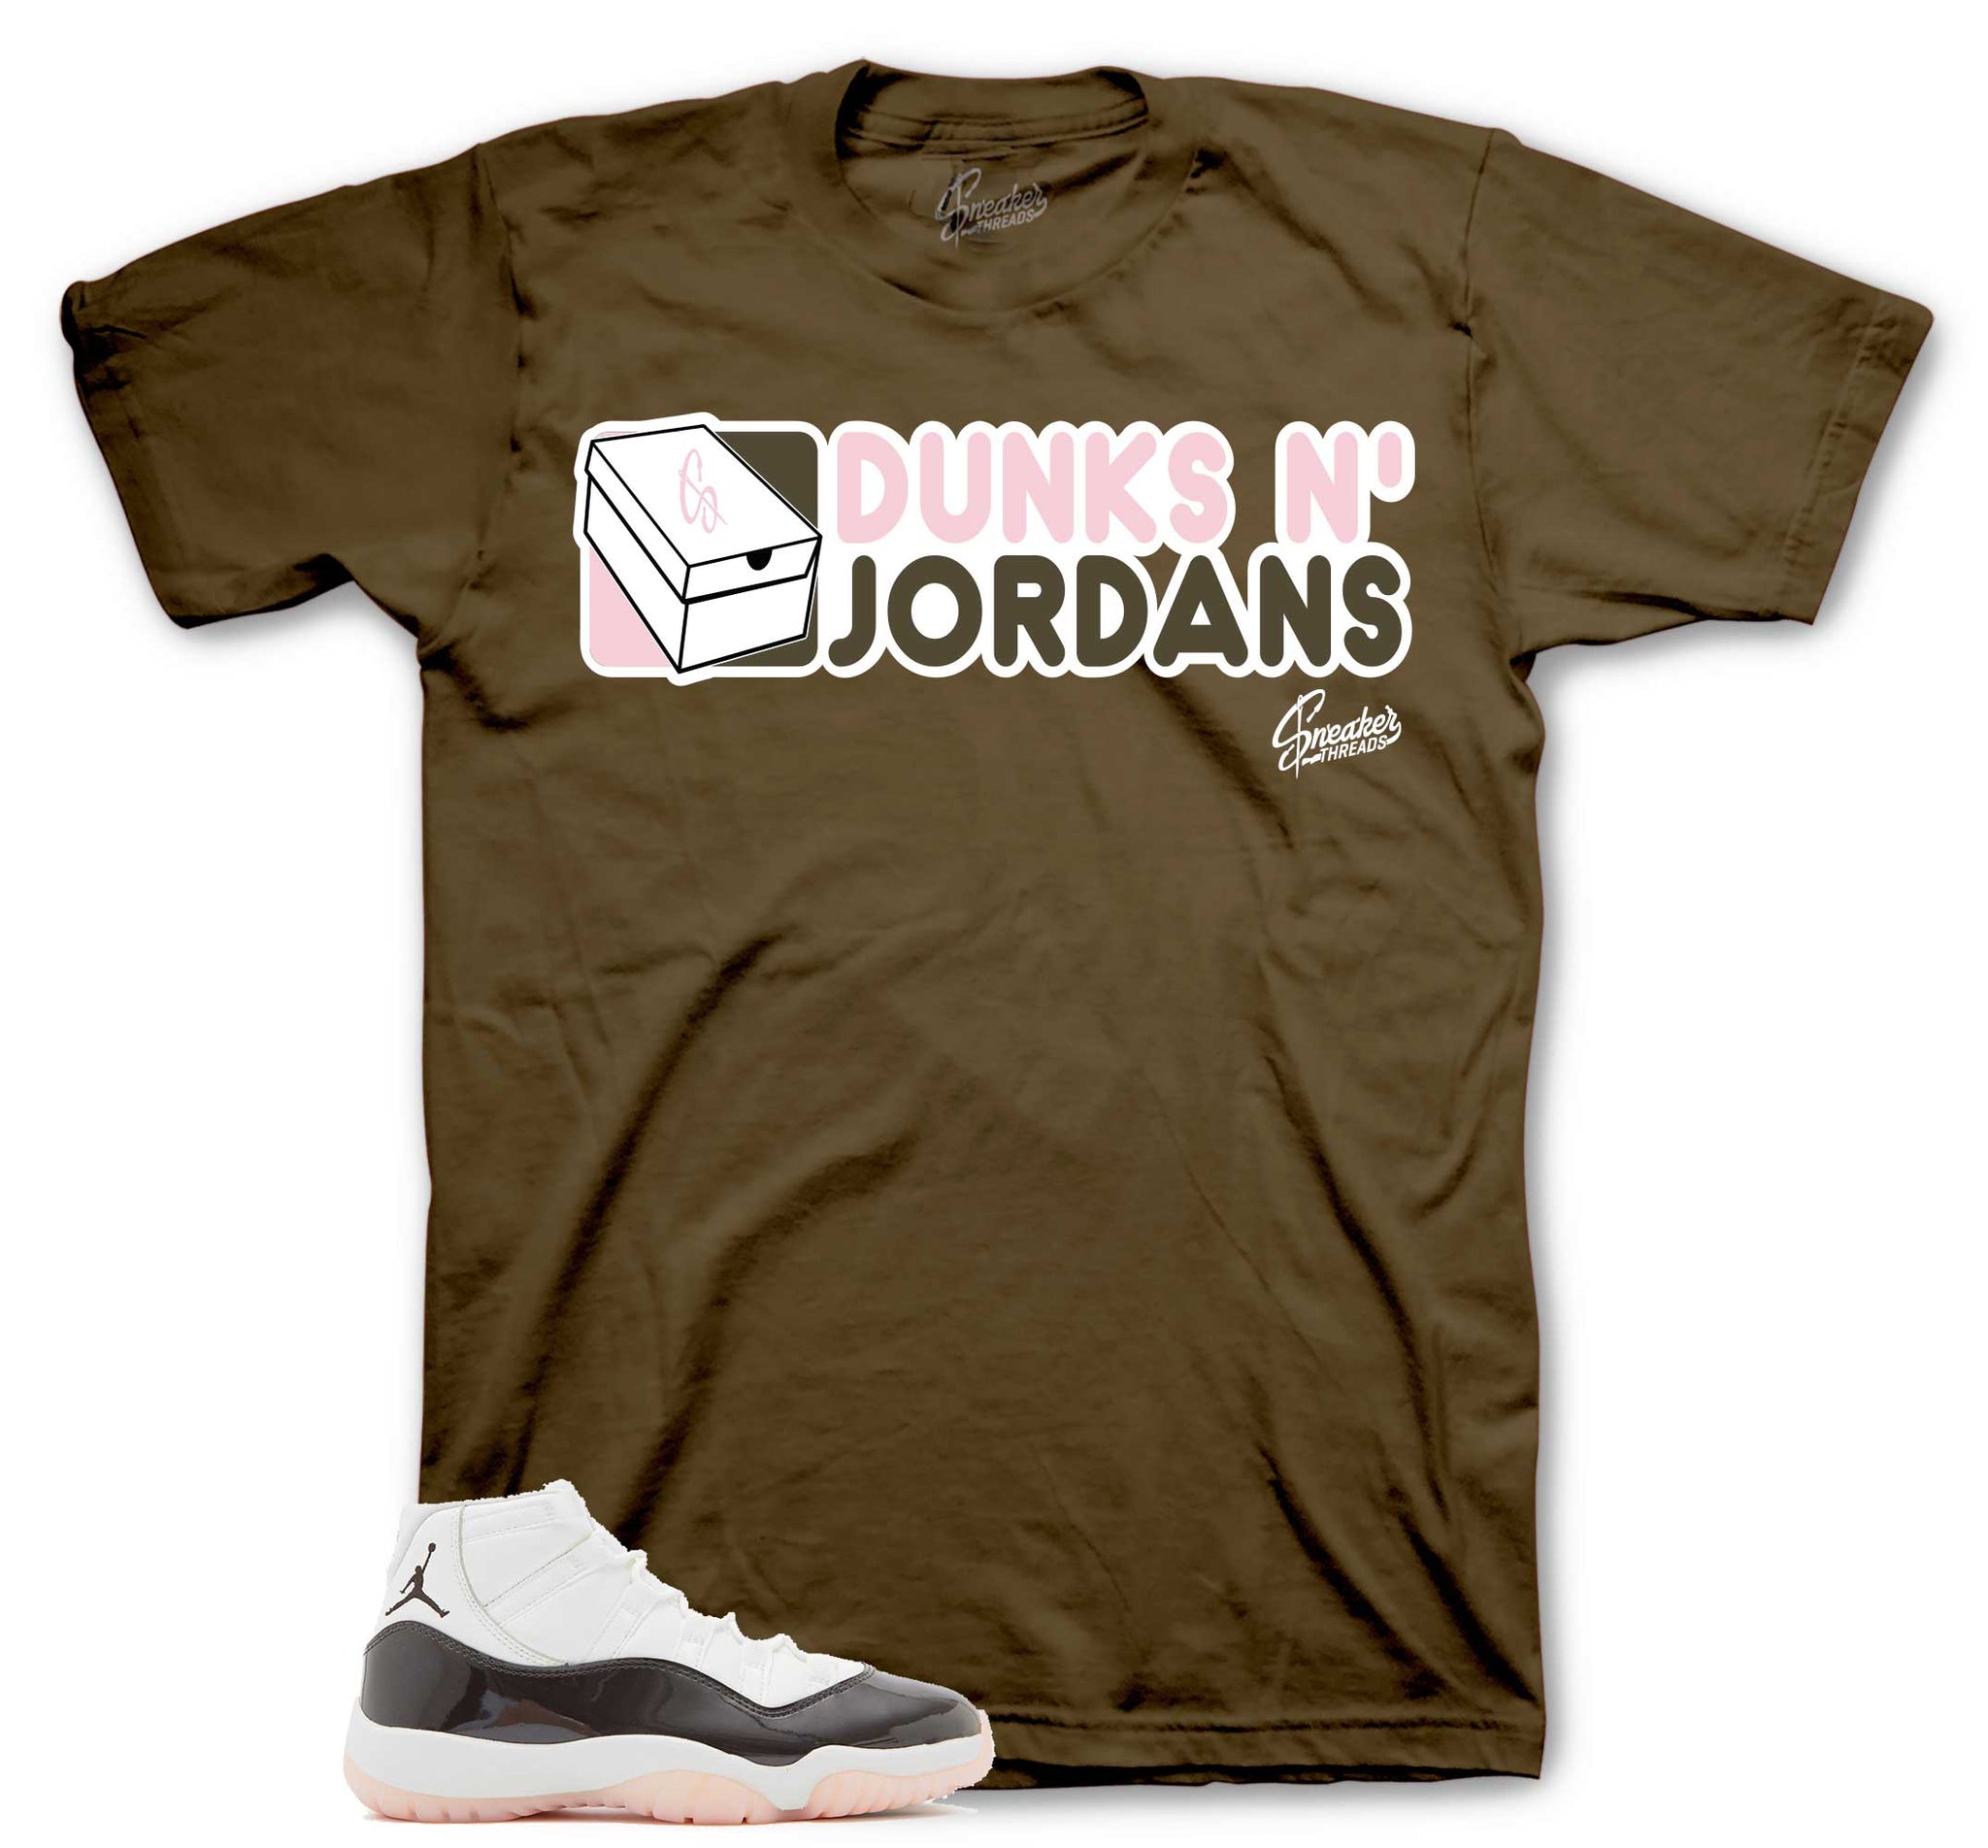 Dunks N Jordans T-Shirt - Retro 11 Neapolitan Shirt